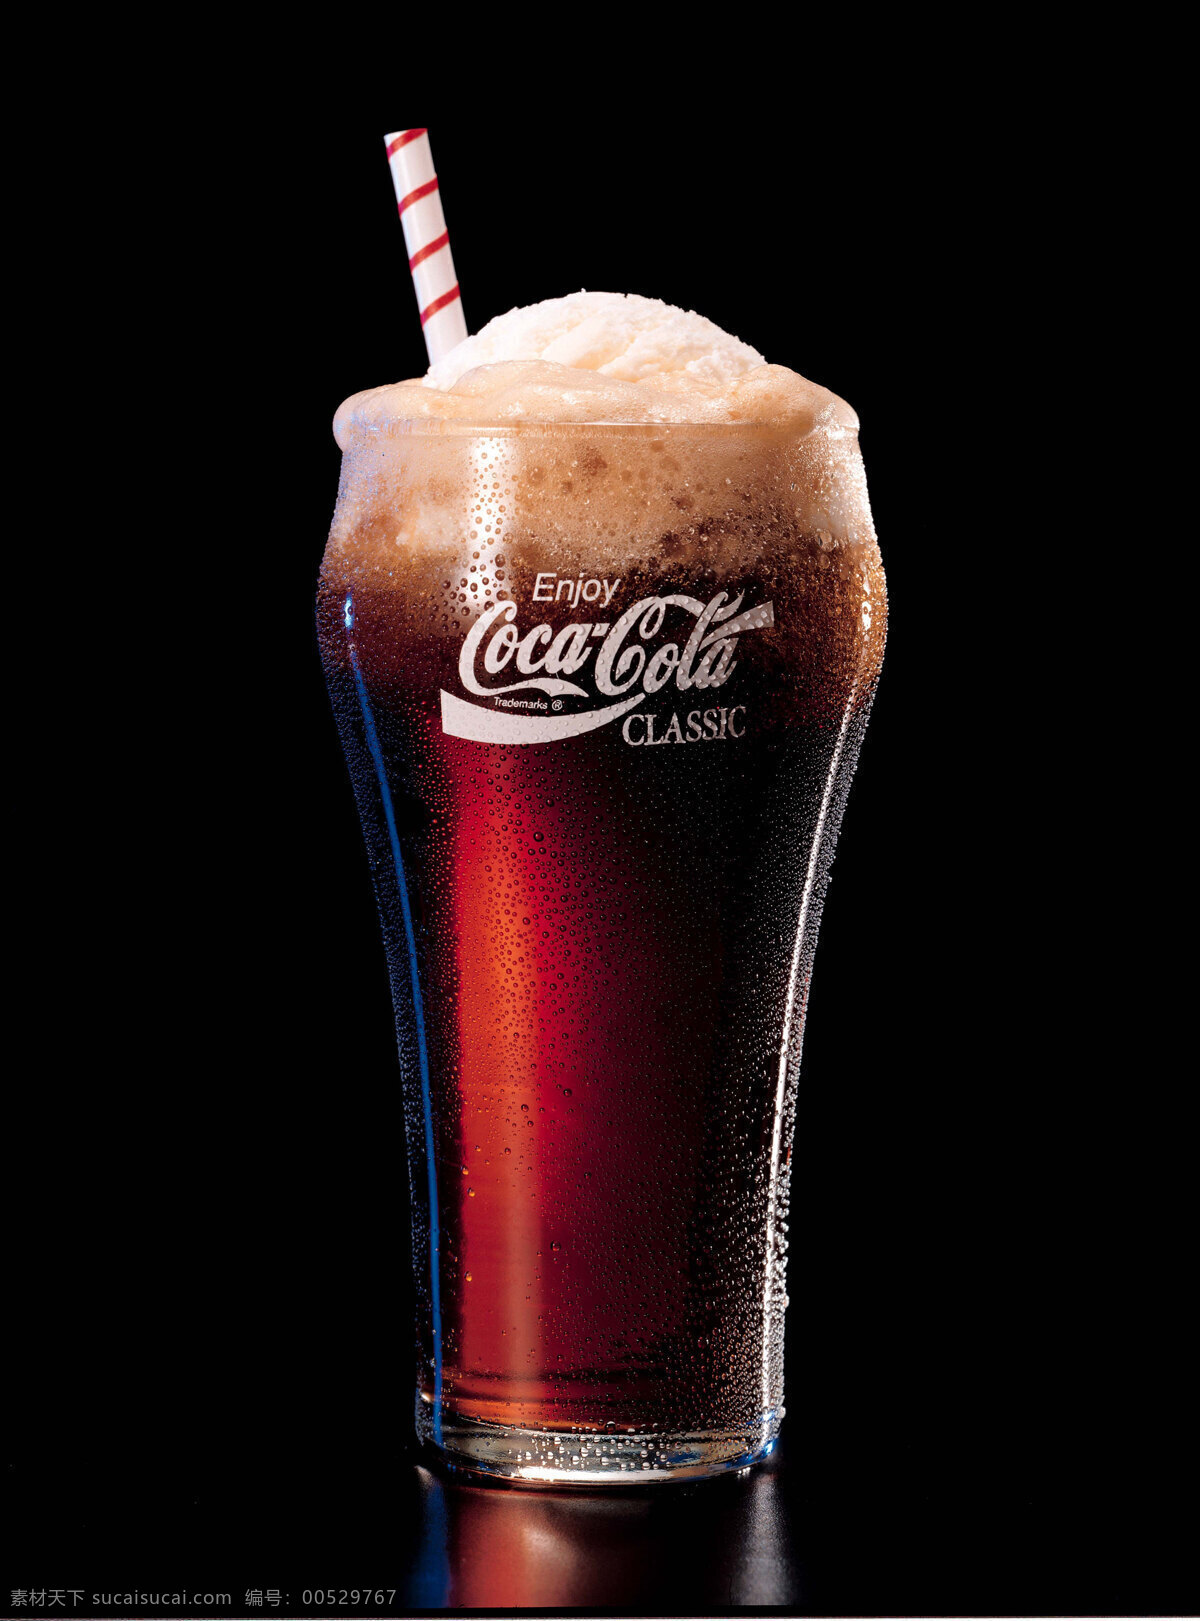 杯子 餐饮美食 黑色背景 可口可乐 可口可乐标志 摄影图库 吸管 饮料酒水 高清 摄影图片 矢量图 日常生活